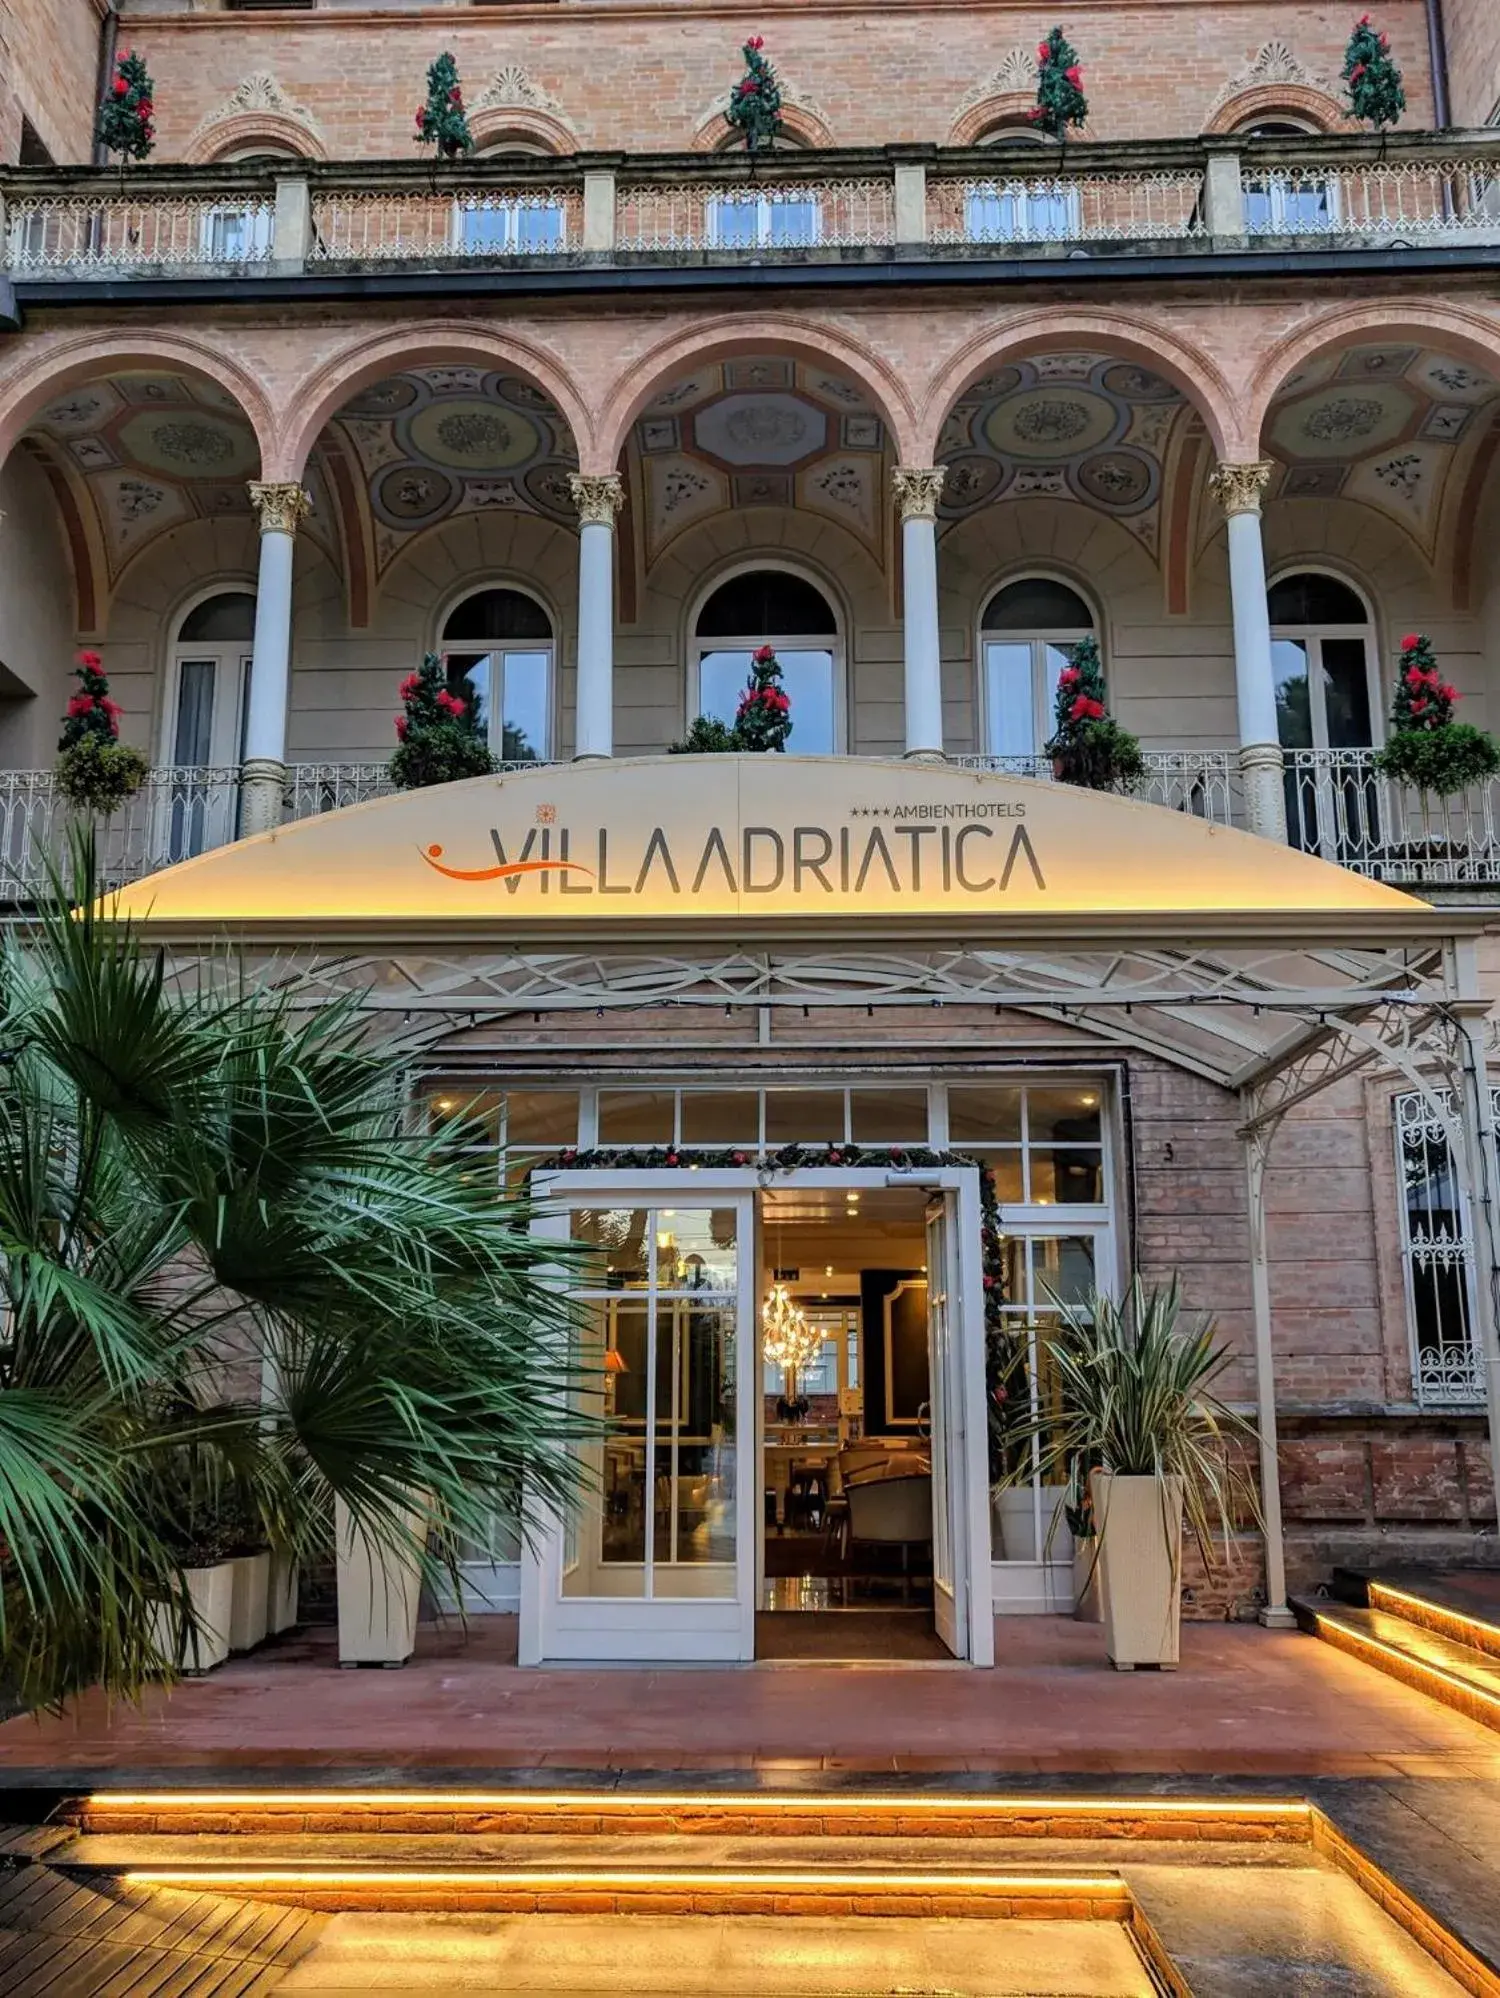 Facade/entrance in Villa Adriatica Ambienthotels